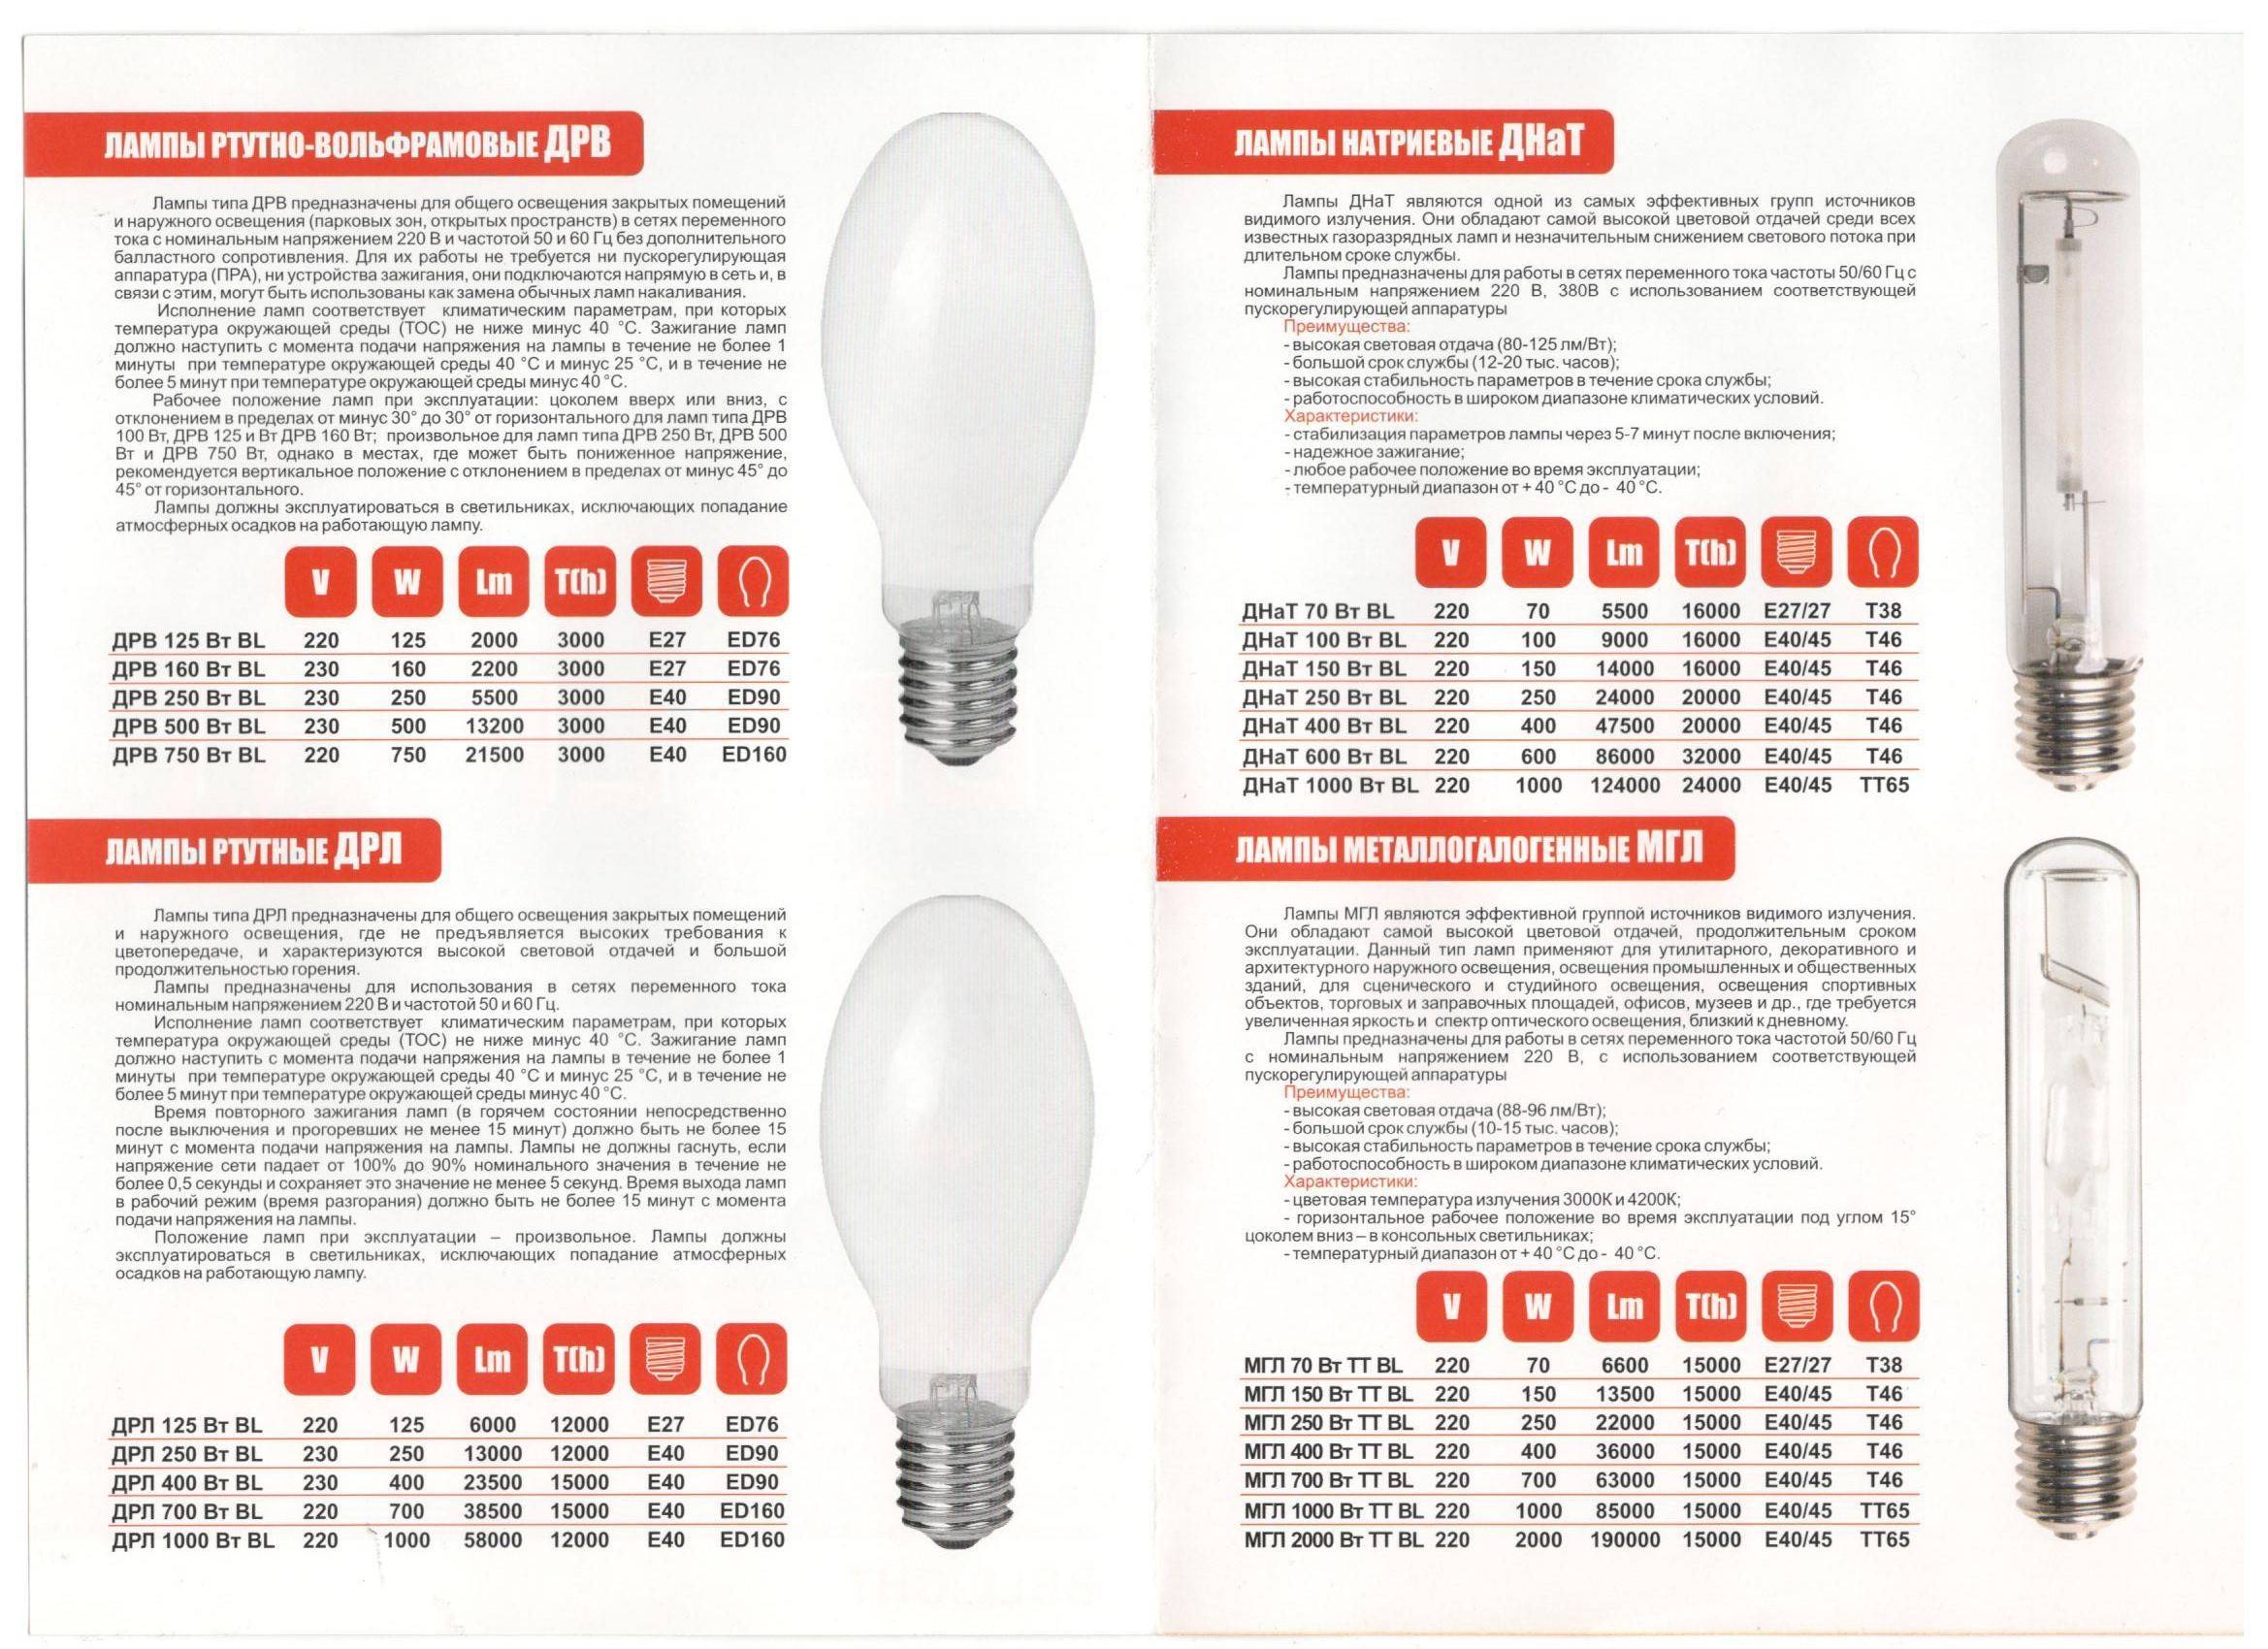 Характеристики, особенности и применение натриевых ламп для уличного освещения